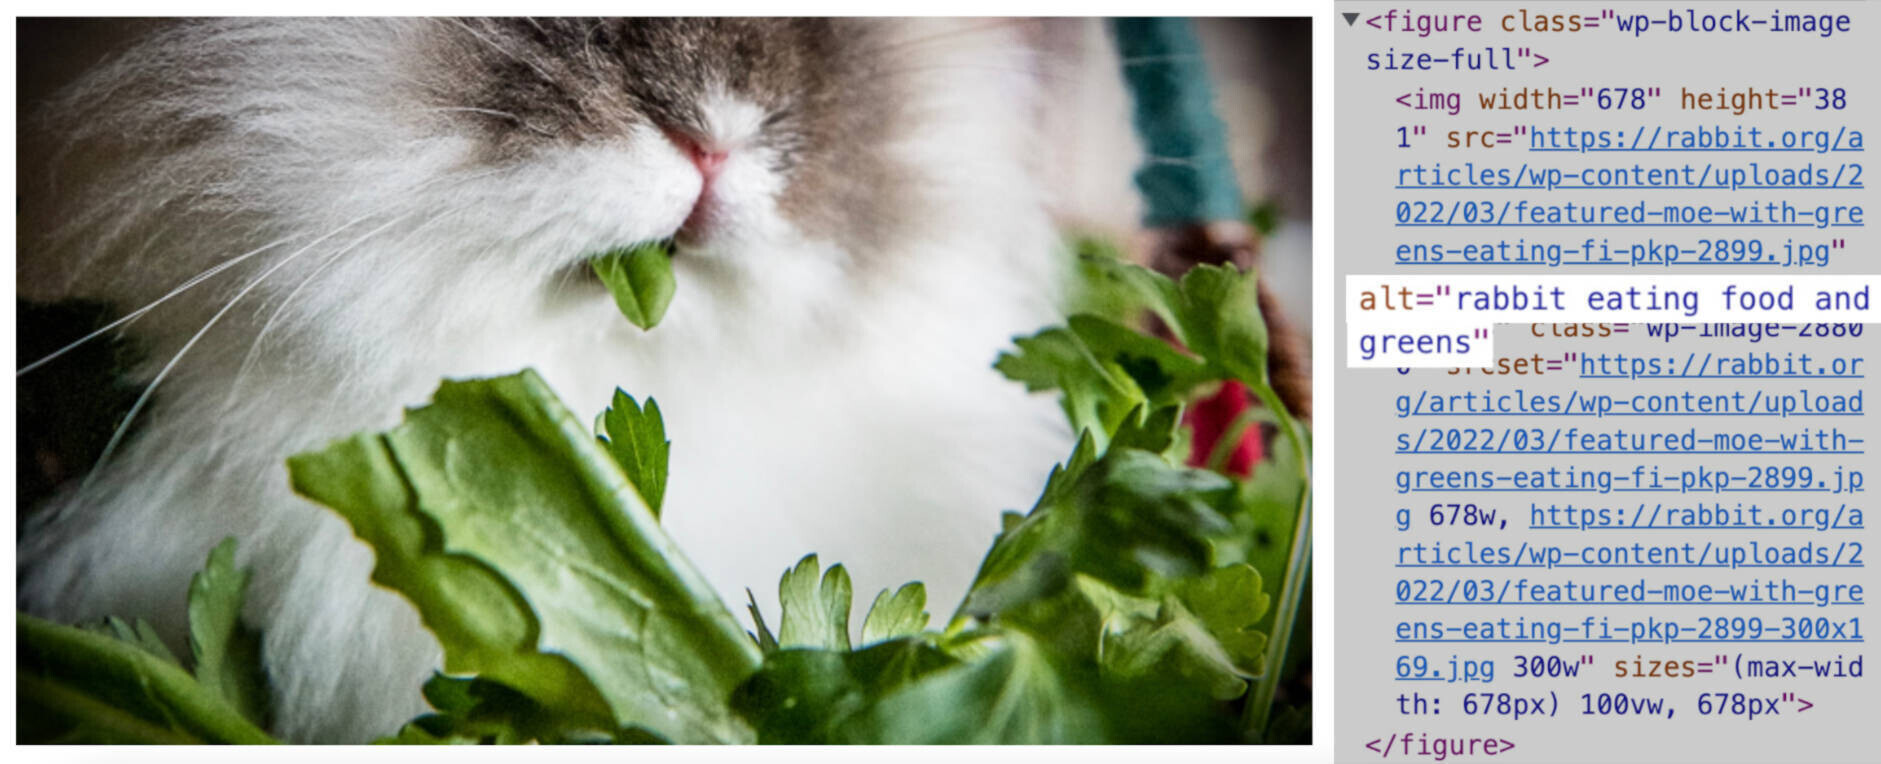 نمونه متن جایگزین برای تصویری از خرگوش در حال خوردن غذا و سبزیجات